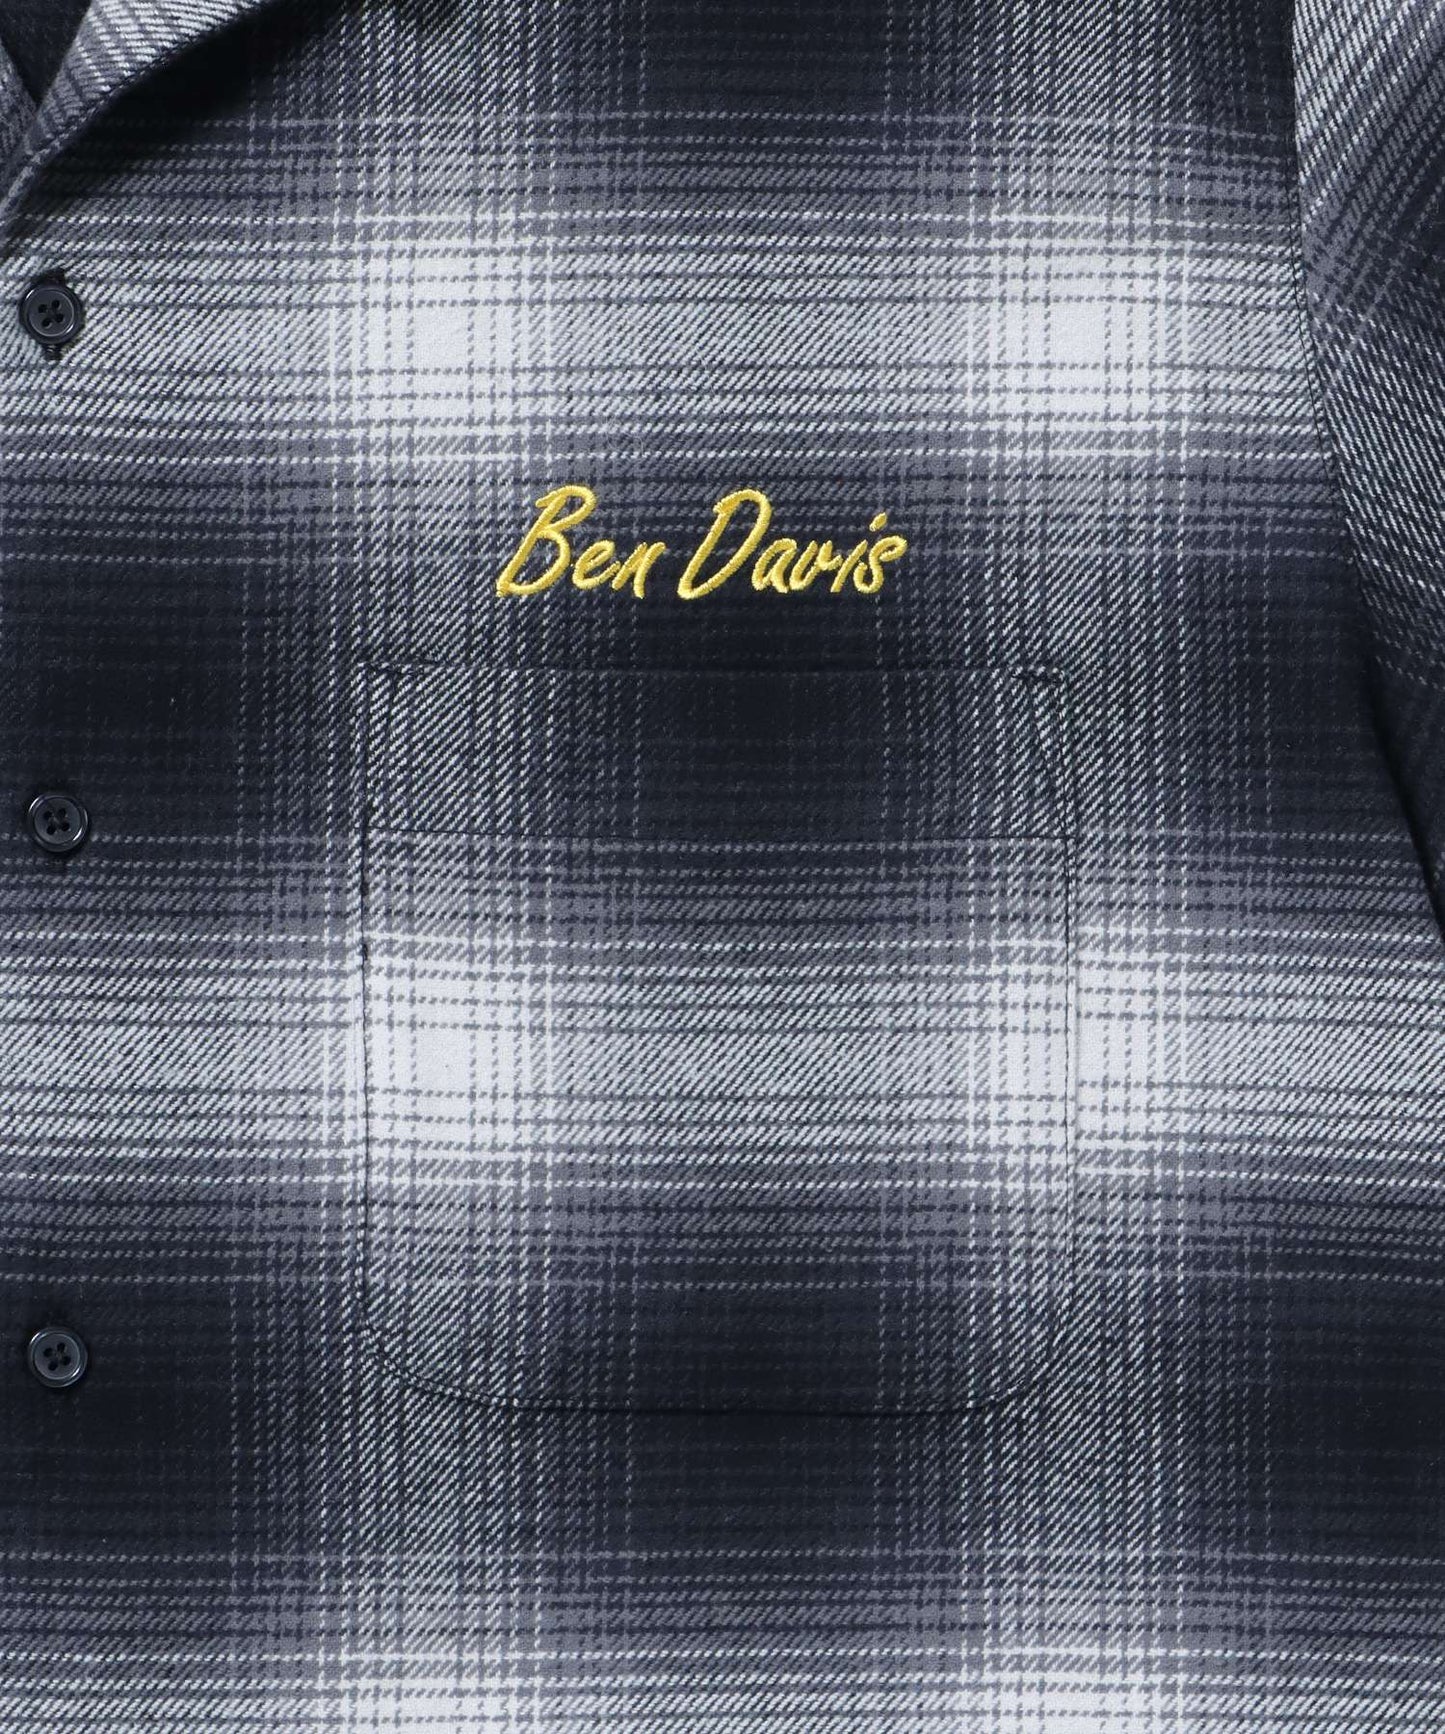 【BEN DAVIS(ベンデイビス)】 STICHED PLAID SHIRT / チェック 古着 刺繍 シャツ 長袖 ブラック